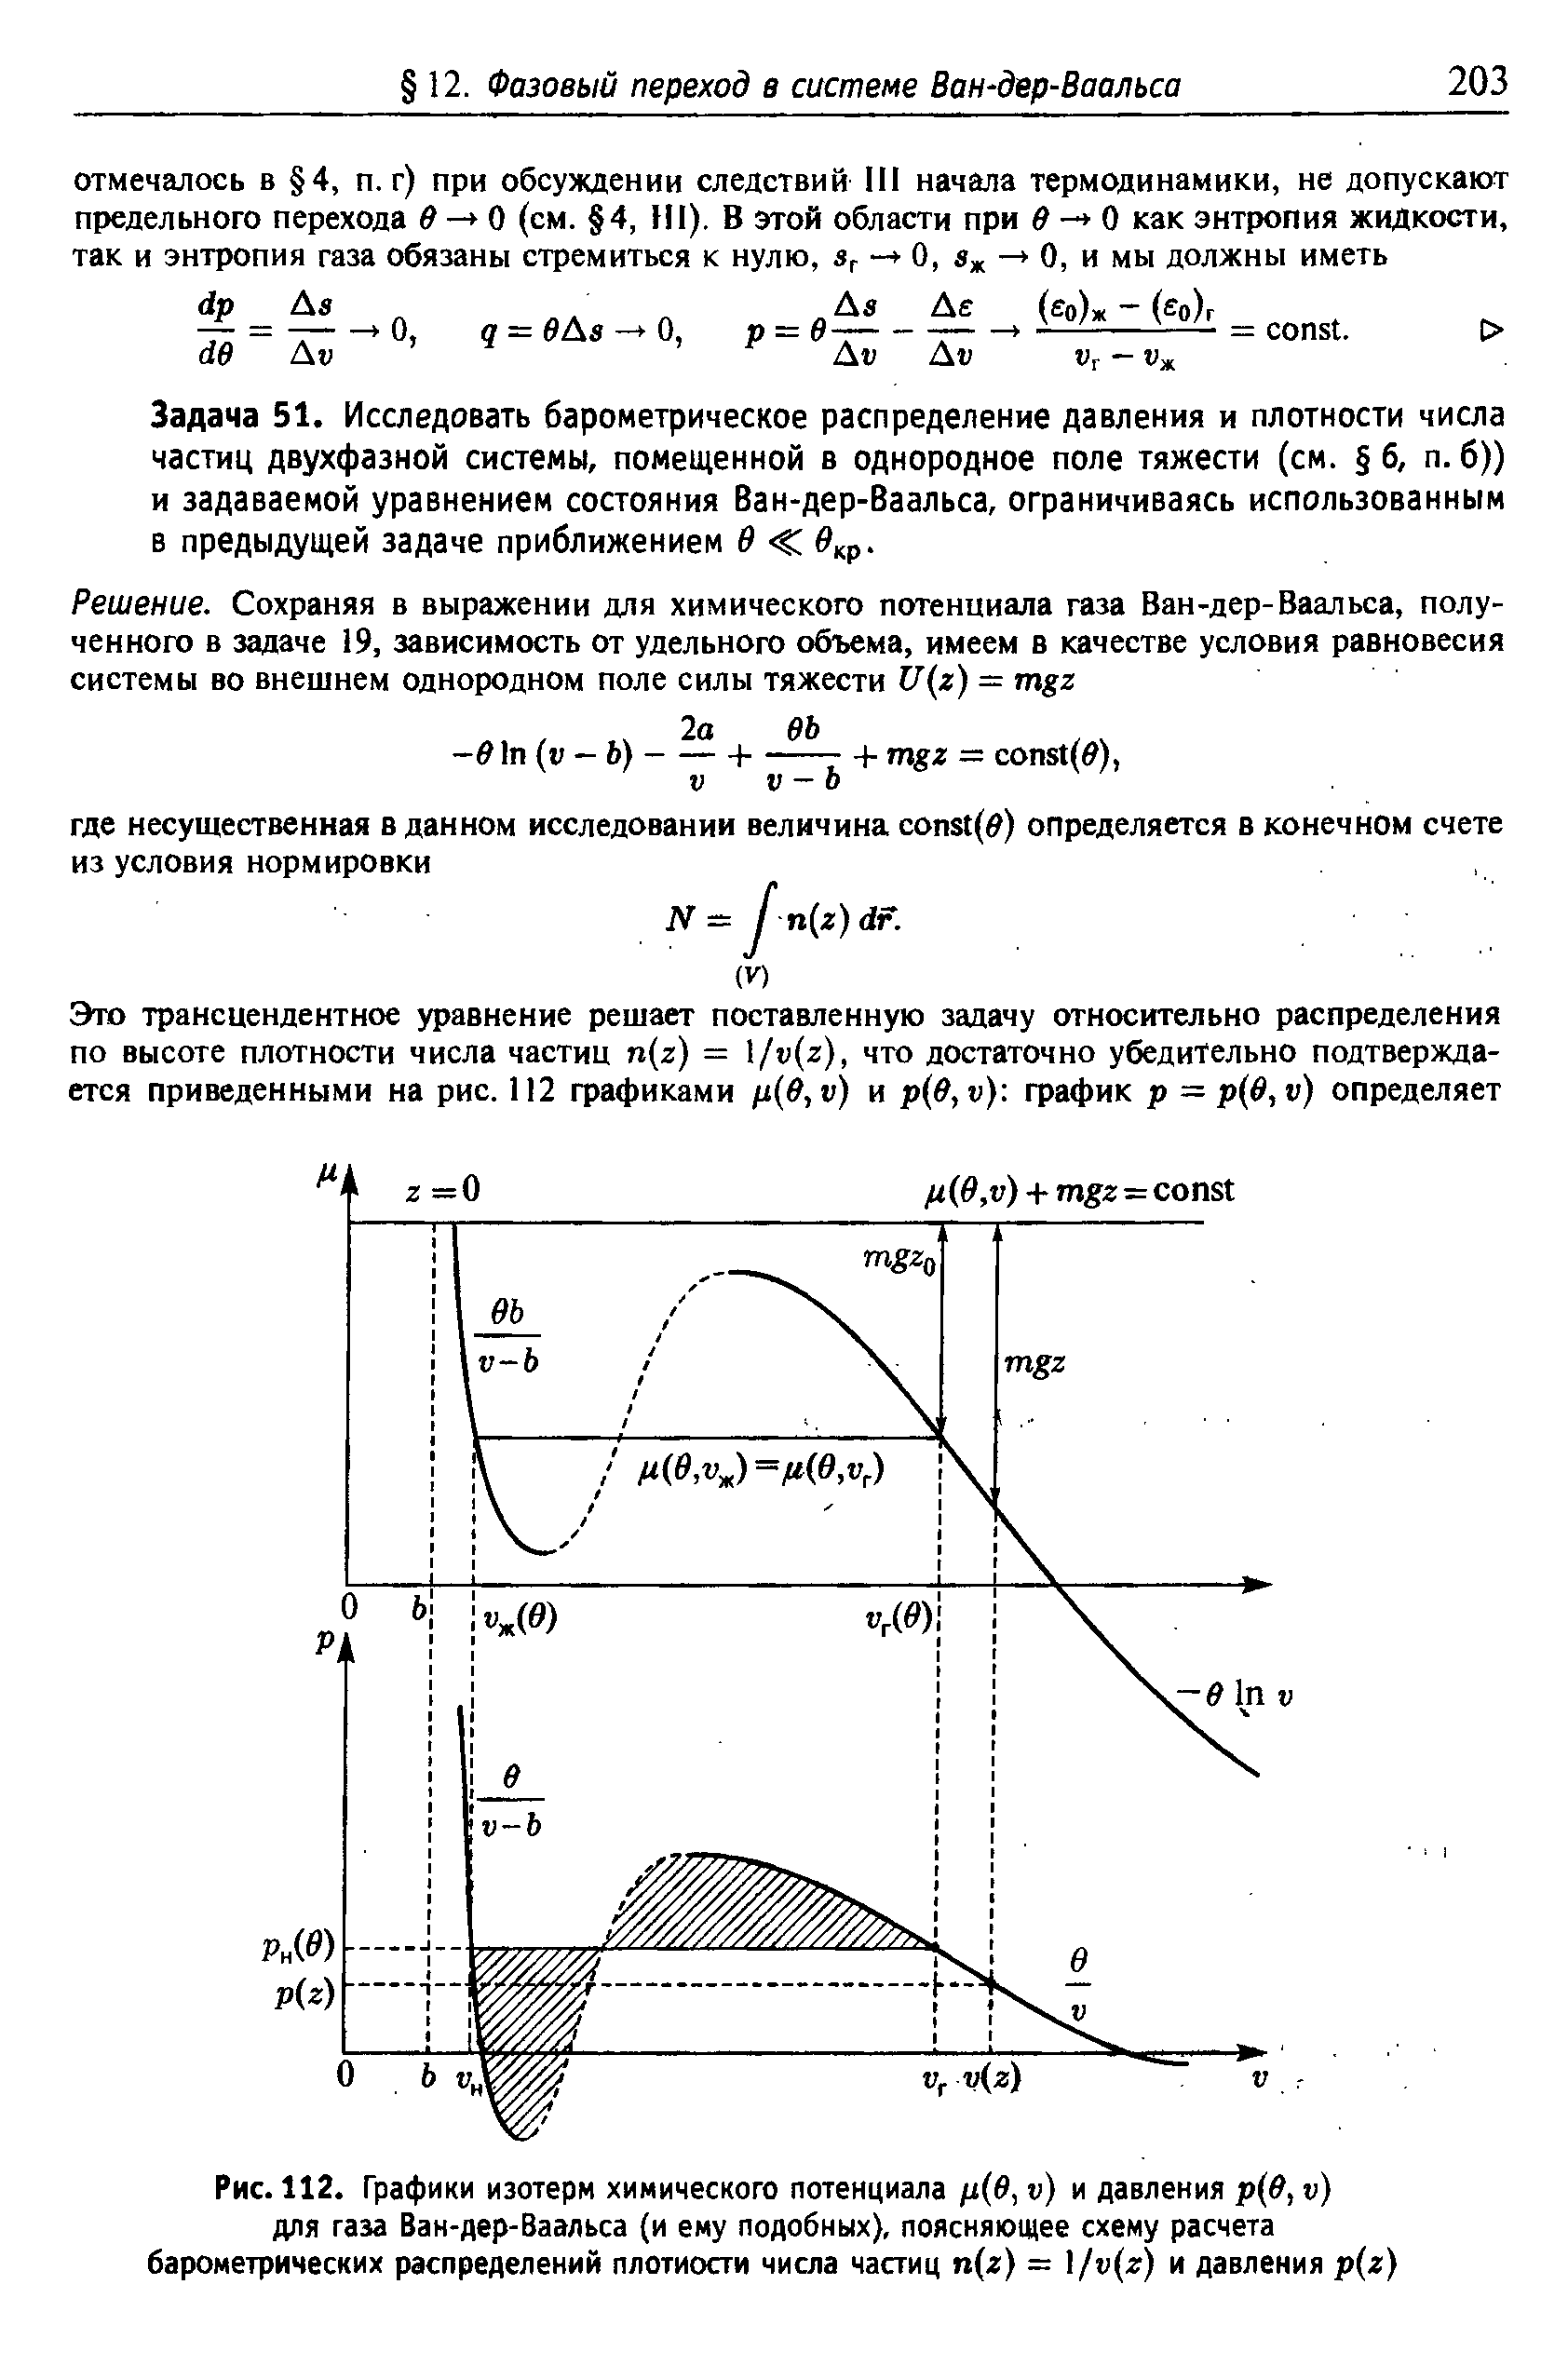 Рис. 112. Графики изотерм <a href="/info/18973">химического потенциала</a> /х(б, и) и давления р в, и) для газа Ван-дер-Ваальса (и ему подобных), поясняющее схему расчета барометрических распределений плотиости числа частиц п(г) = v z) и давления р г)
